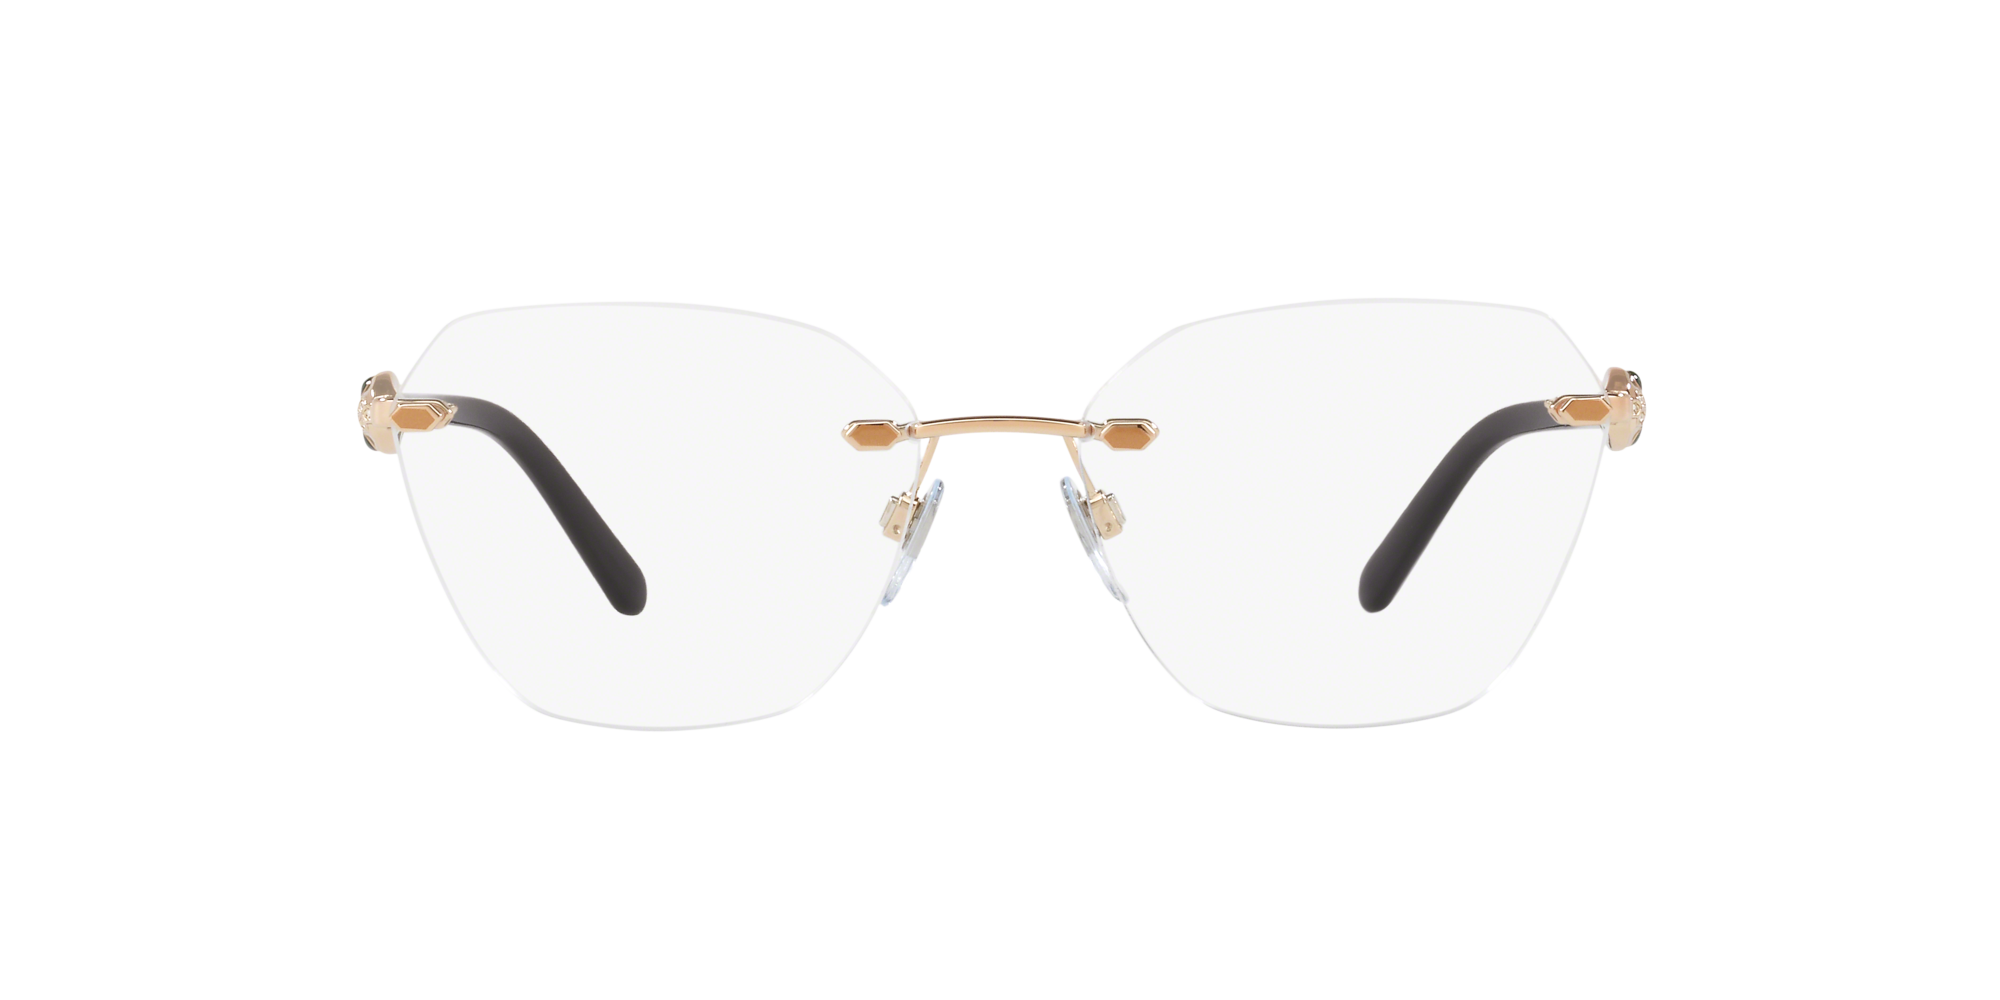 bvlgari eyeglasses lenscrafters